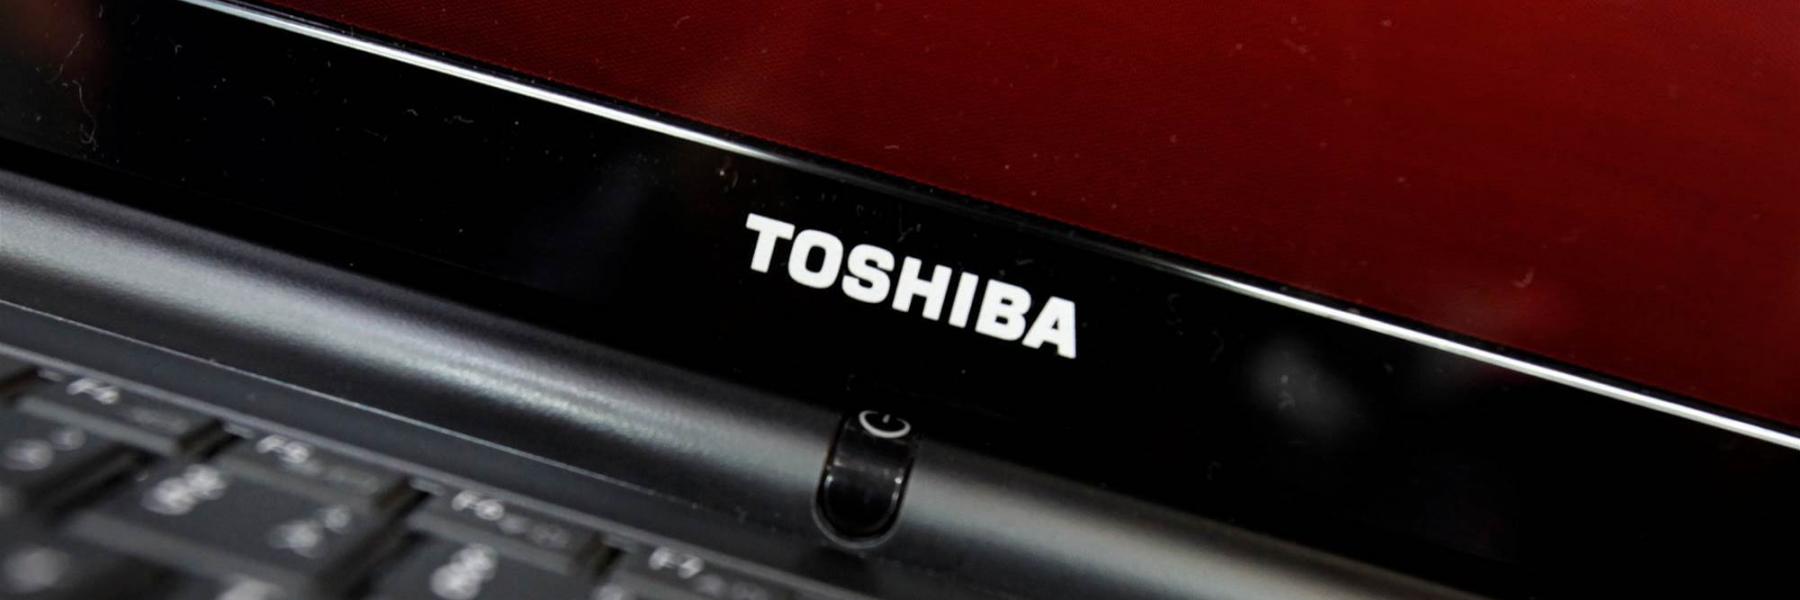 شركة توشيبا تُعلن رسميًا انسحابها من عالم صناعة الحواسيب المحمولة